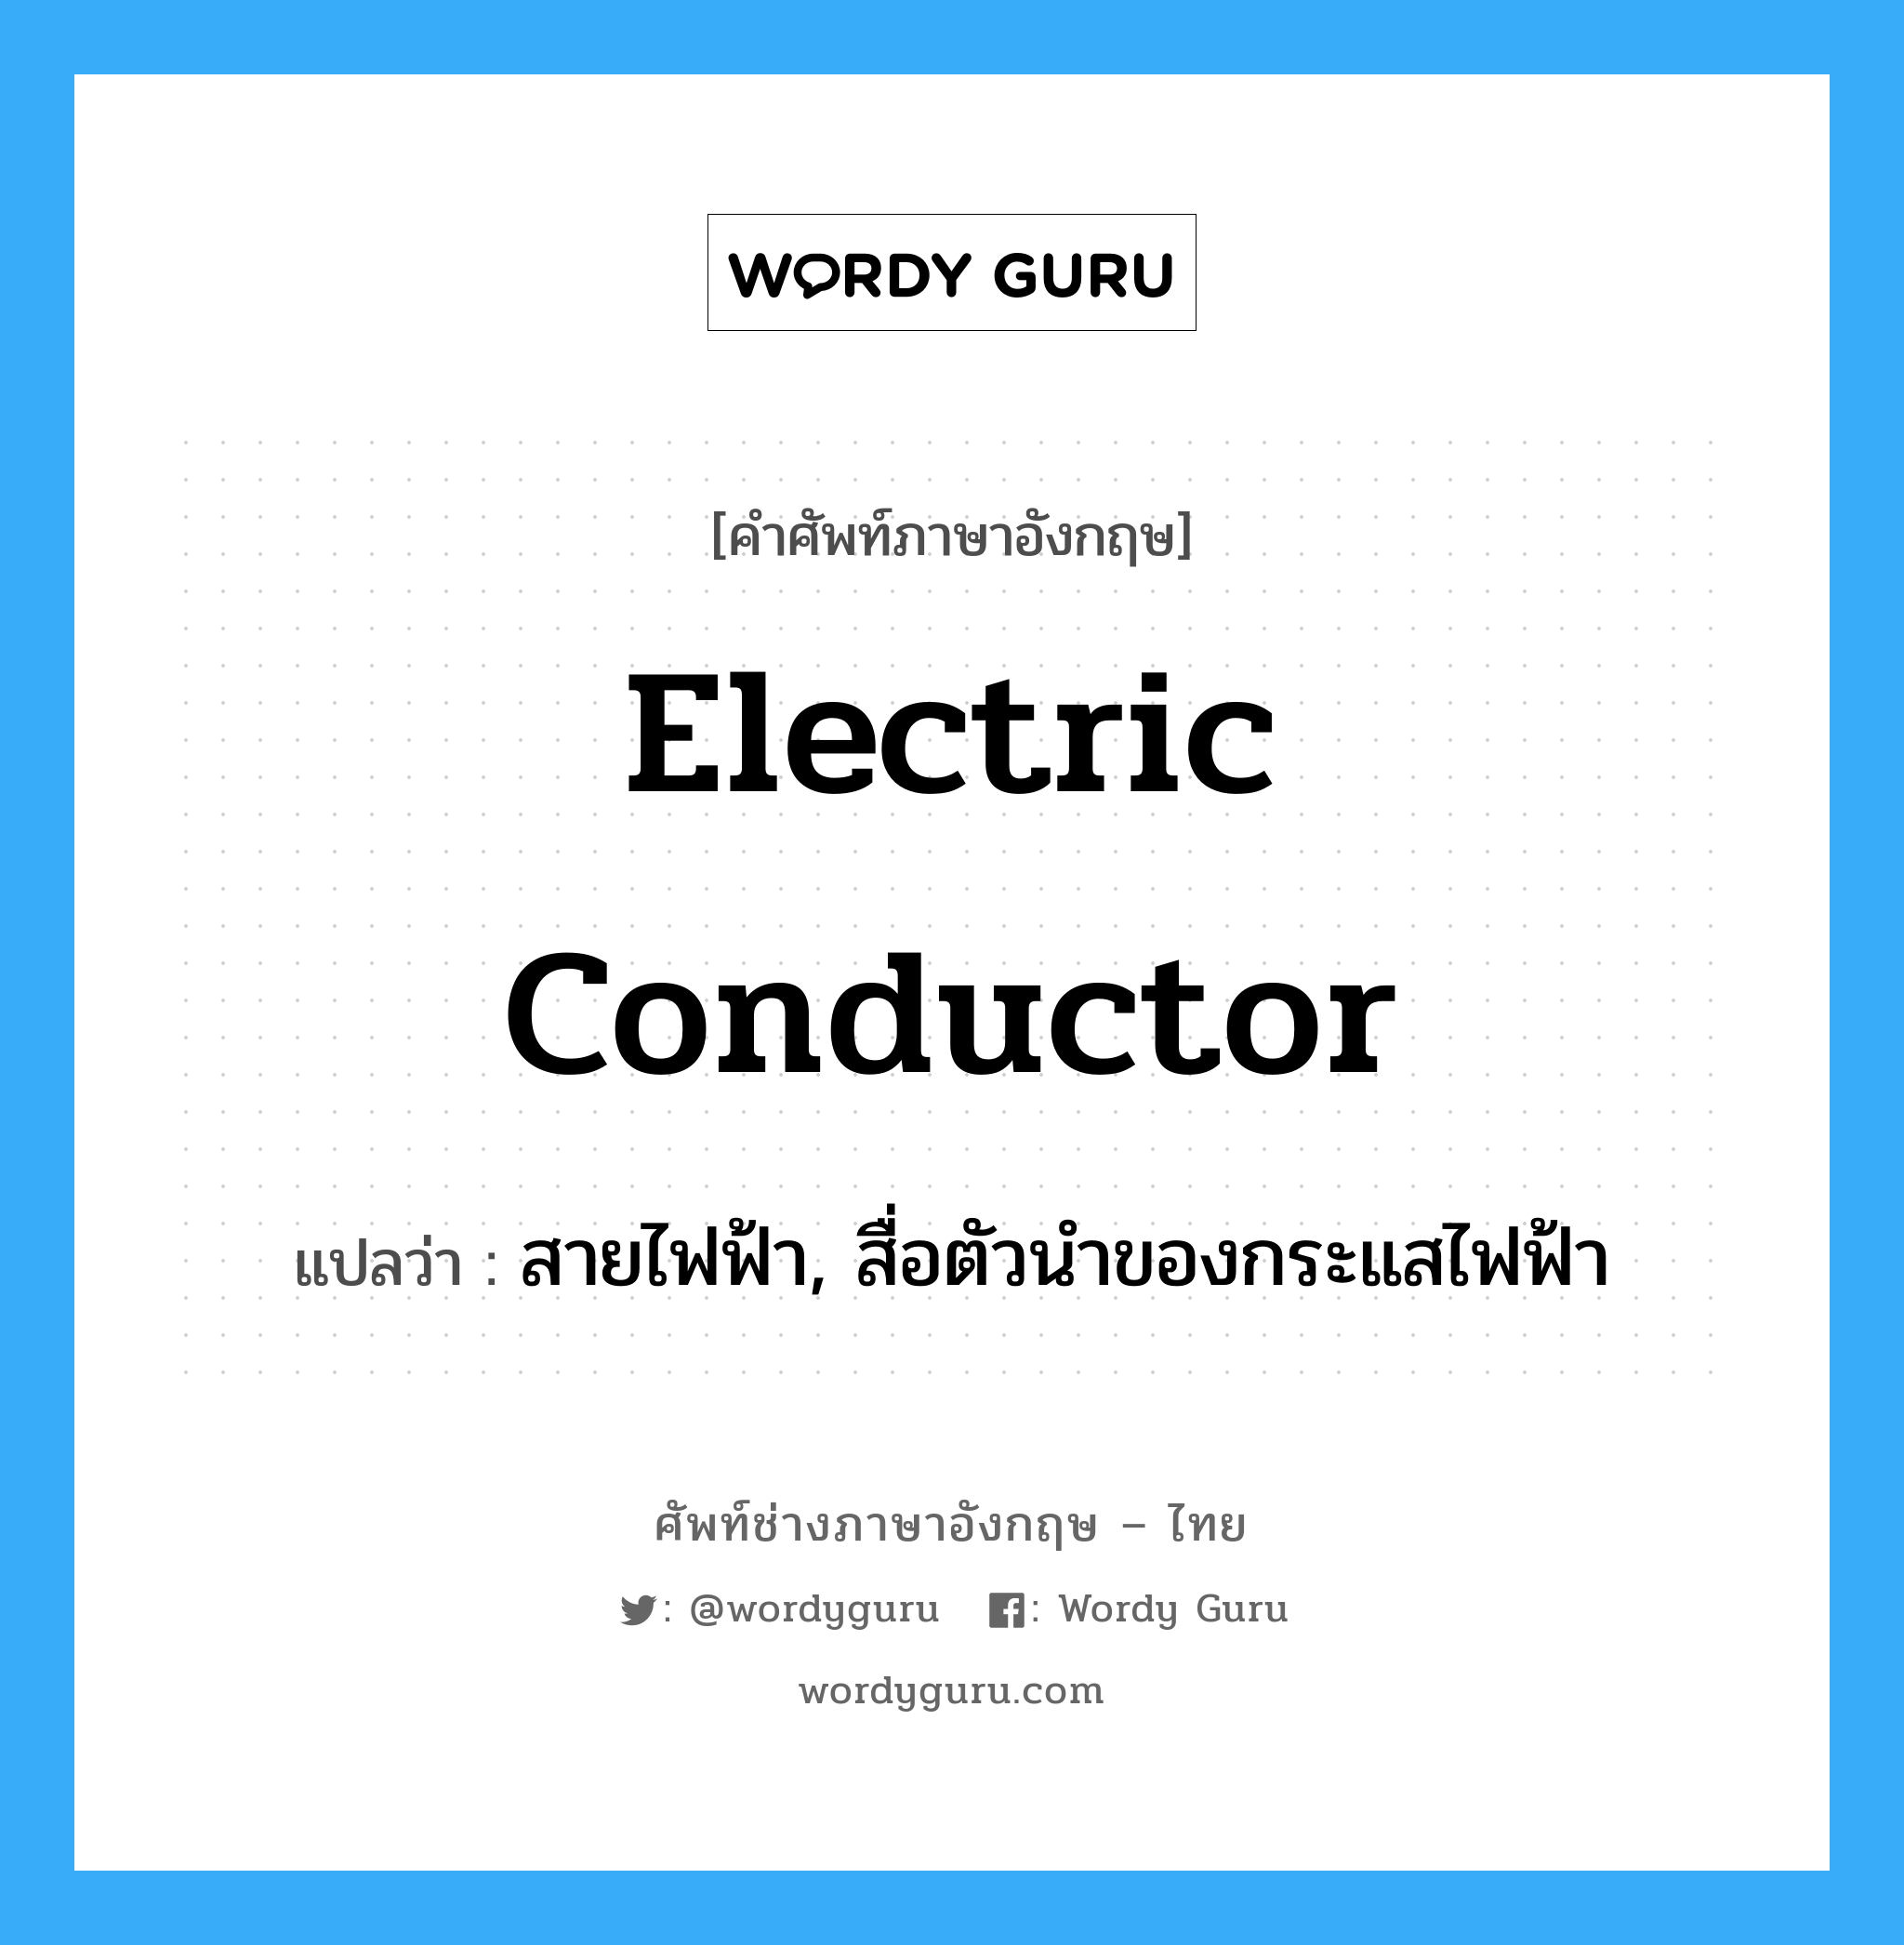 electric conductor แปลว่า?, คำศัพท์ช่างภาษาอังกฤษ - ไทย electric conductor คำศัพท์ภาษาอังกฤษ electric conductor แปลว่า สายไฟฟ้า, สื่อตัวนำของกระแสไฟฟ้า